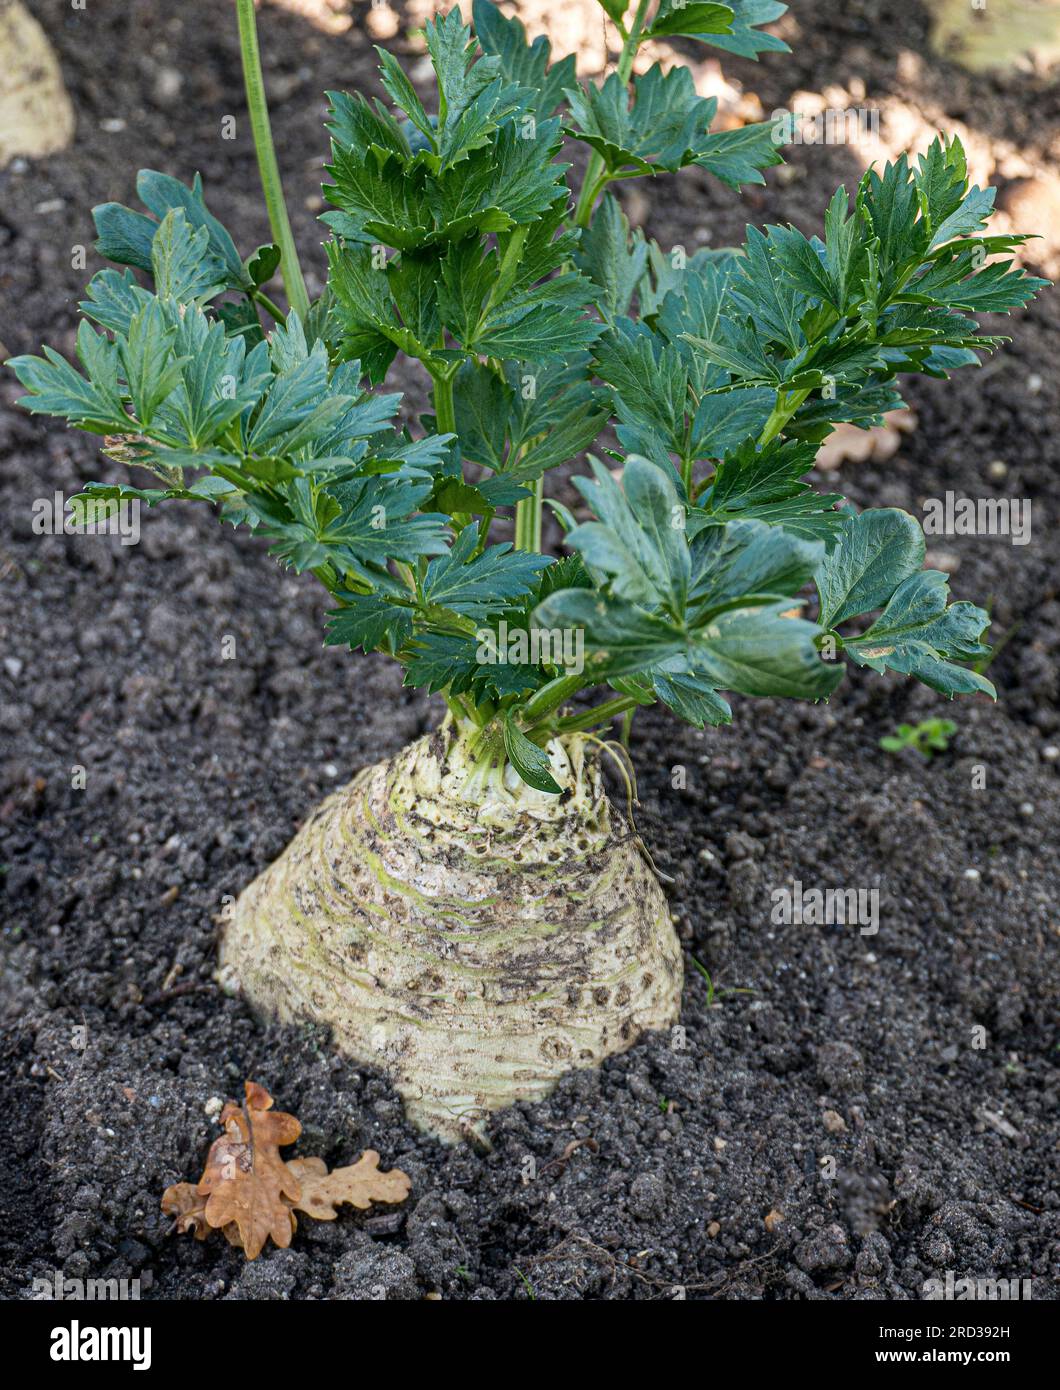 Knollensellerie „PRINZ“ in einem Küchengarten Knollensellerie (Apium graveolens rapaceum) Wurzelgemüse wächst in einem sonnenbeleuchteten Herbstgarten Stockfoto